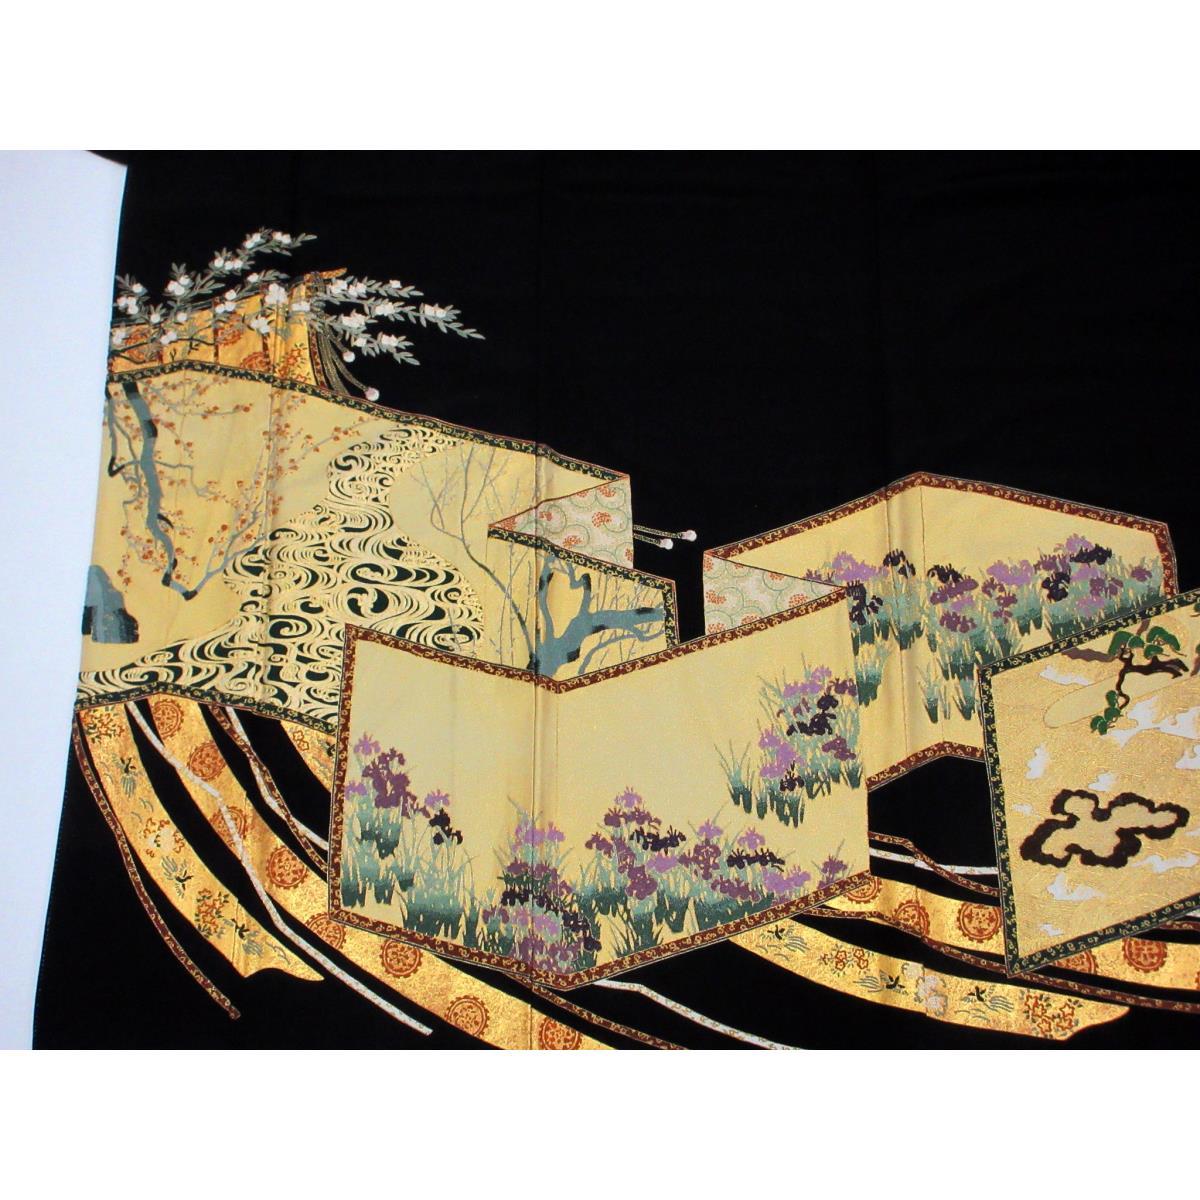 Tomesode (formal kimono) by Matsuo Korin, Sagara embroidery, sword and sword eating